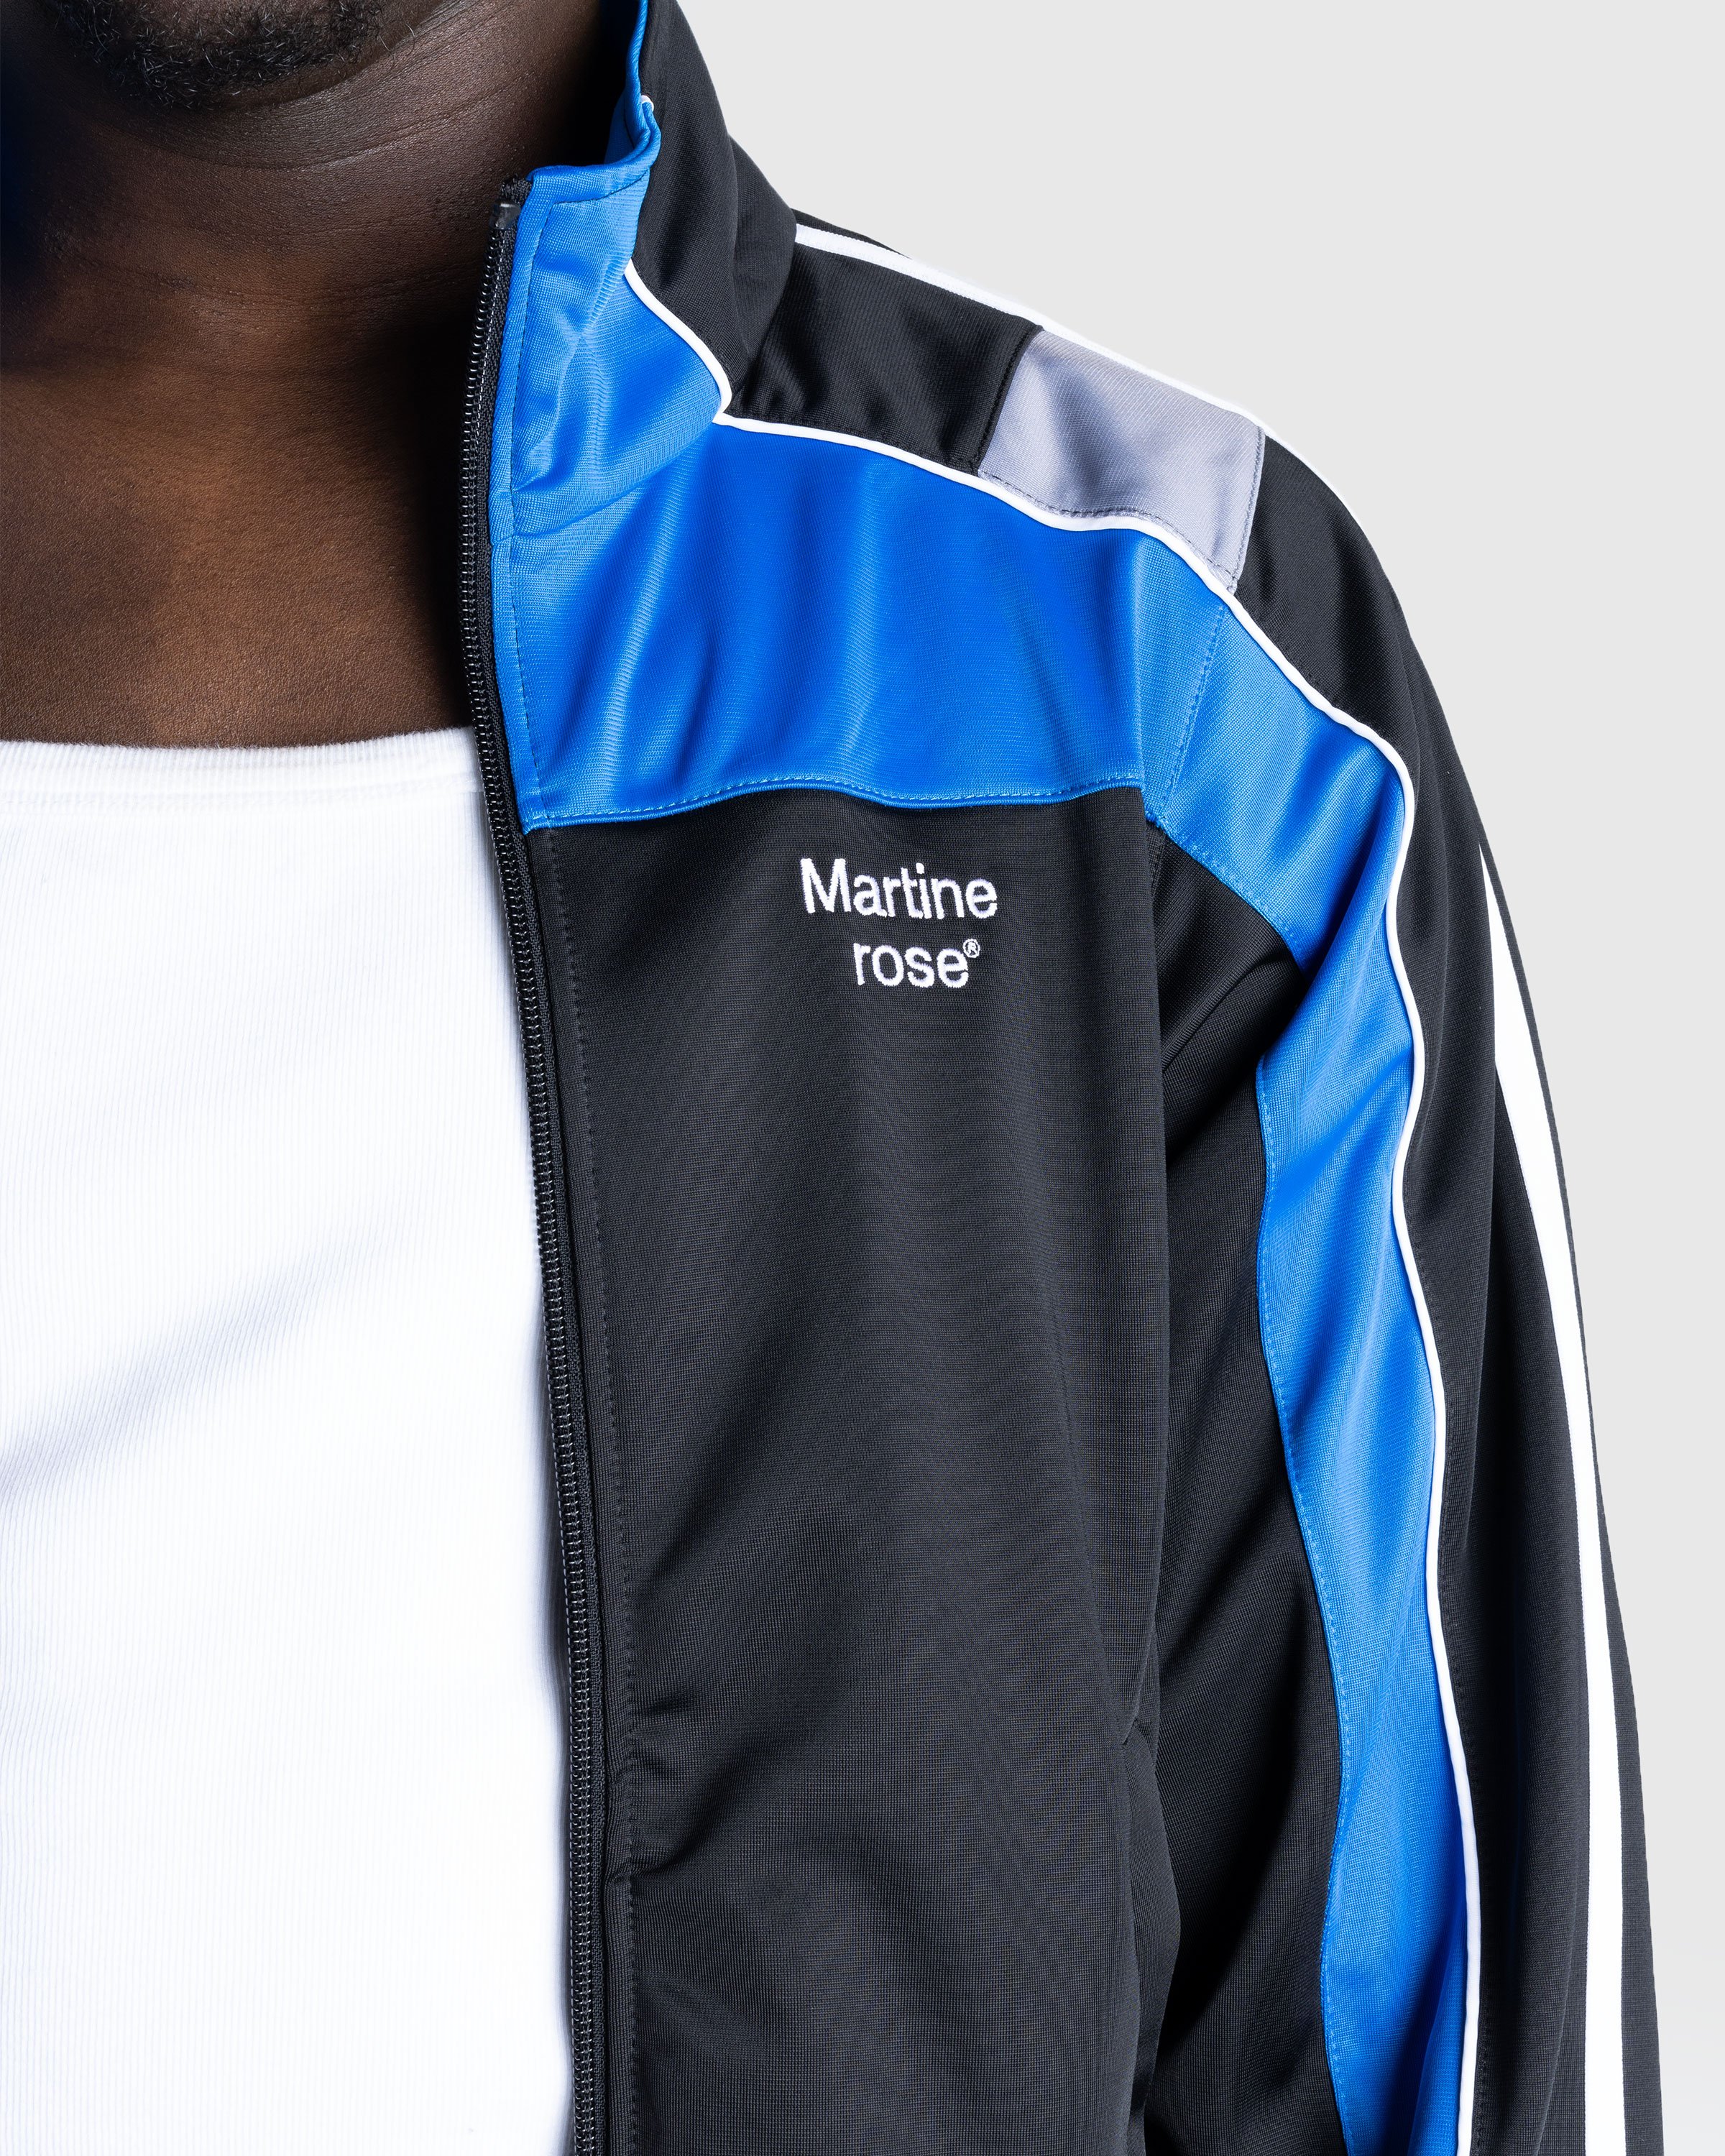 Martine Rose - Shrunken Track Jacket Black / Blue / Grey - Clothing - Black - Image 5